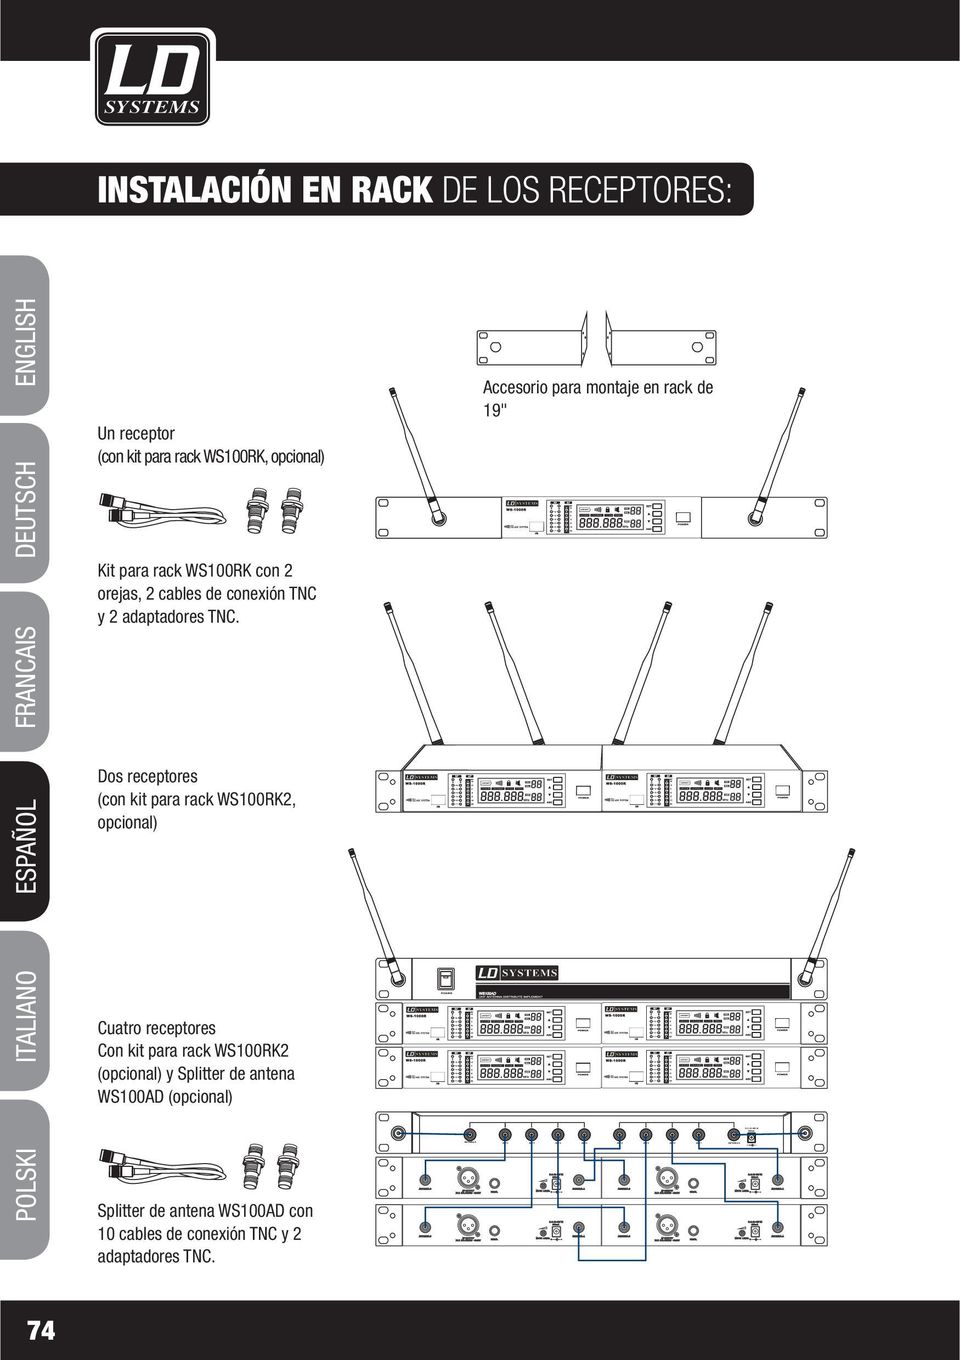 Dos receptores (con kit para rack WS00RK, opcional) Cuatro receptores Con kit para rack WS00RK (opcional) y